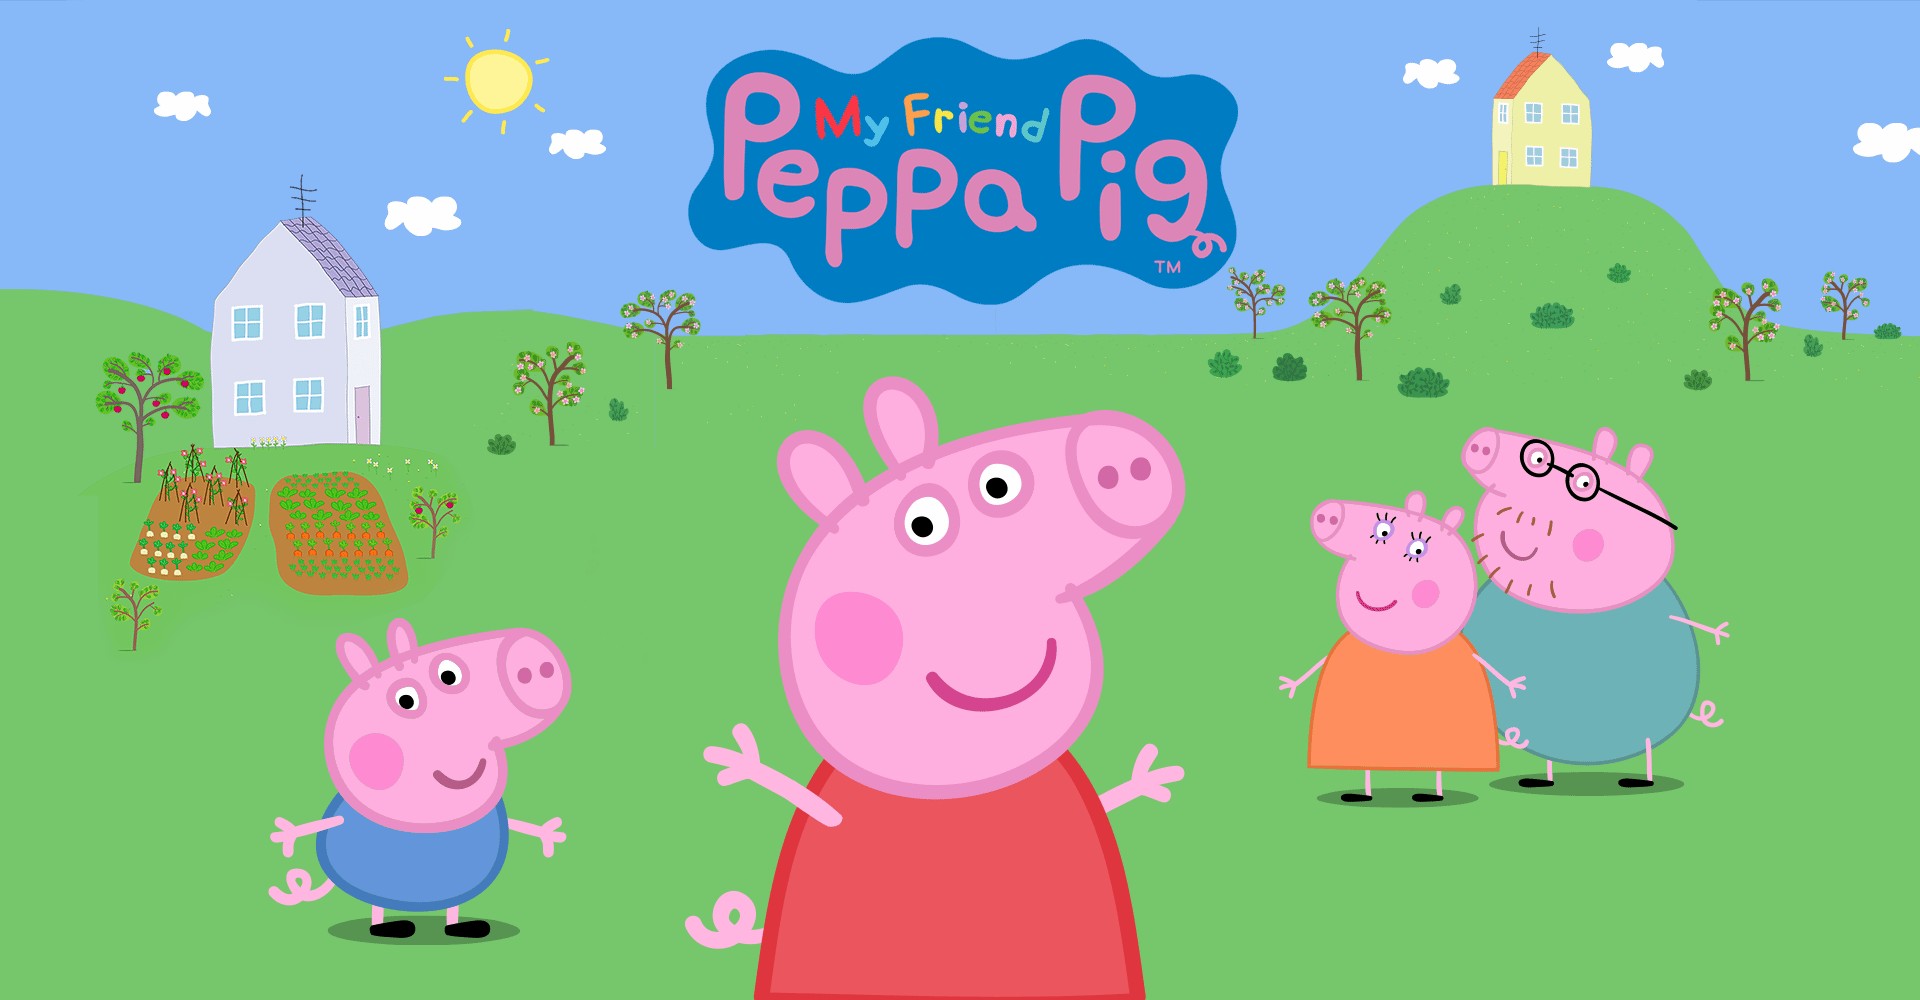 Download do APK de O Mundo da Peppa Pig: Jogos para Android